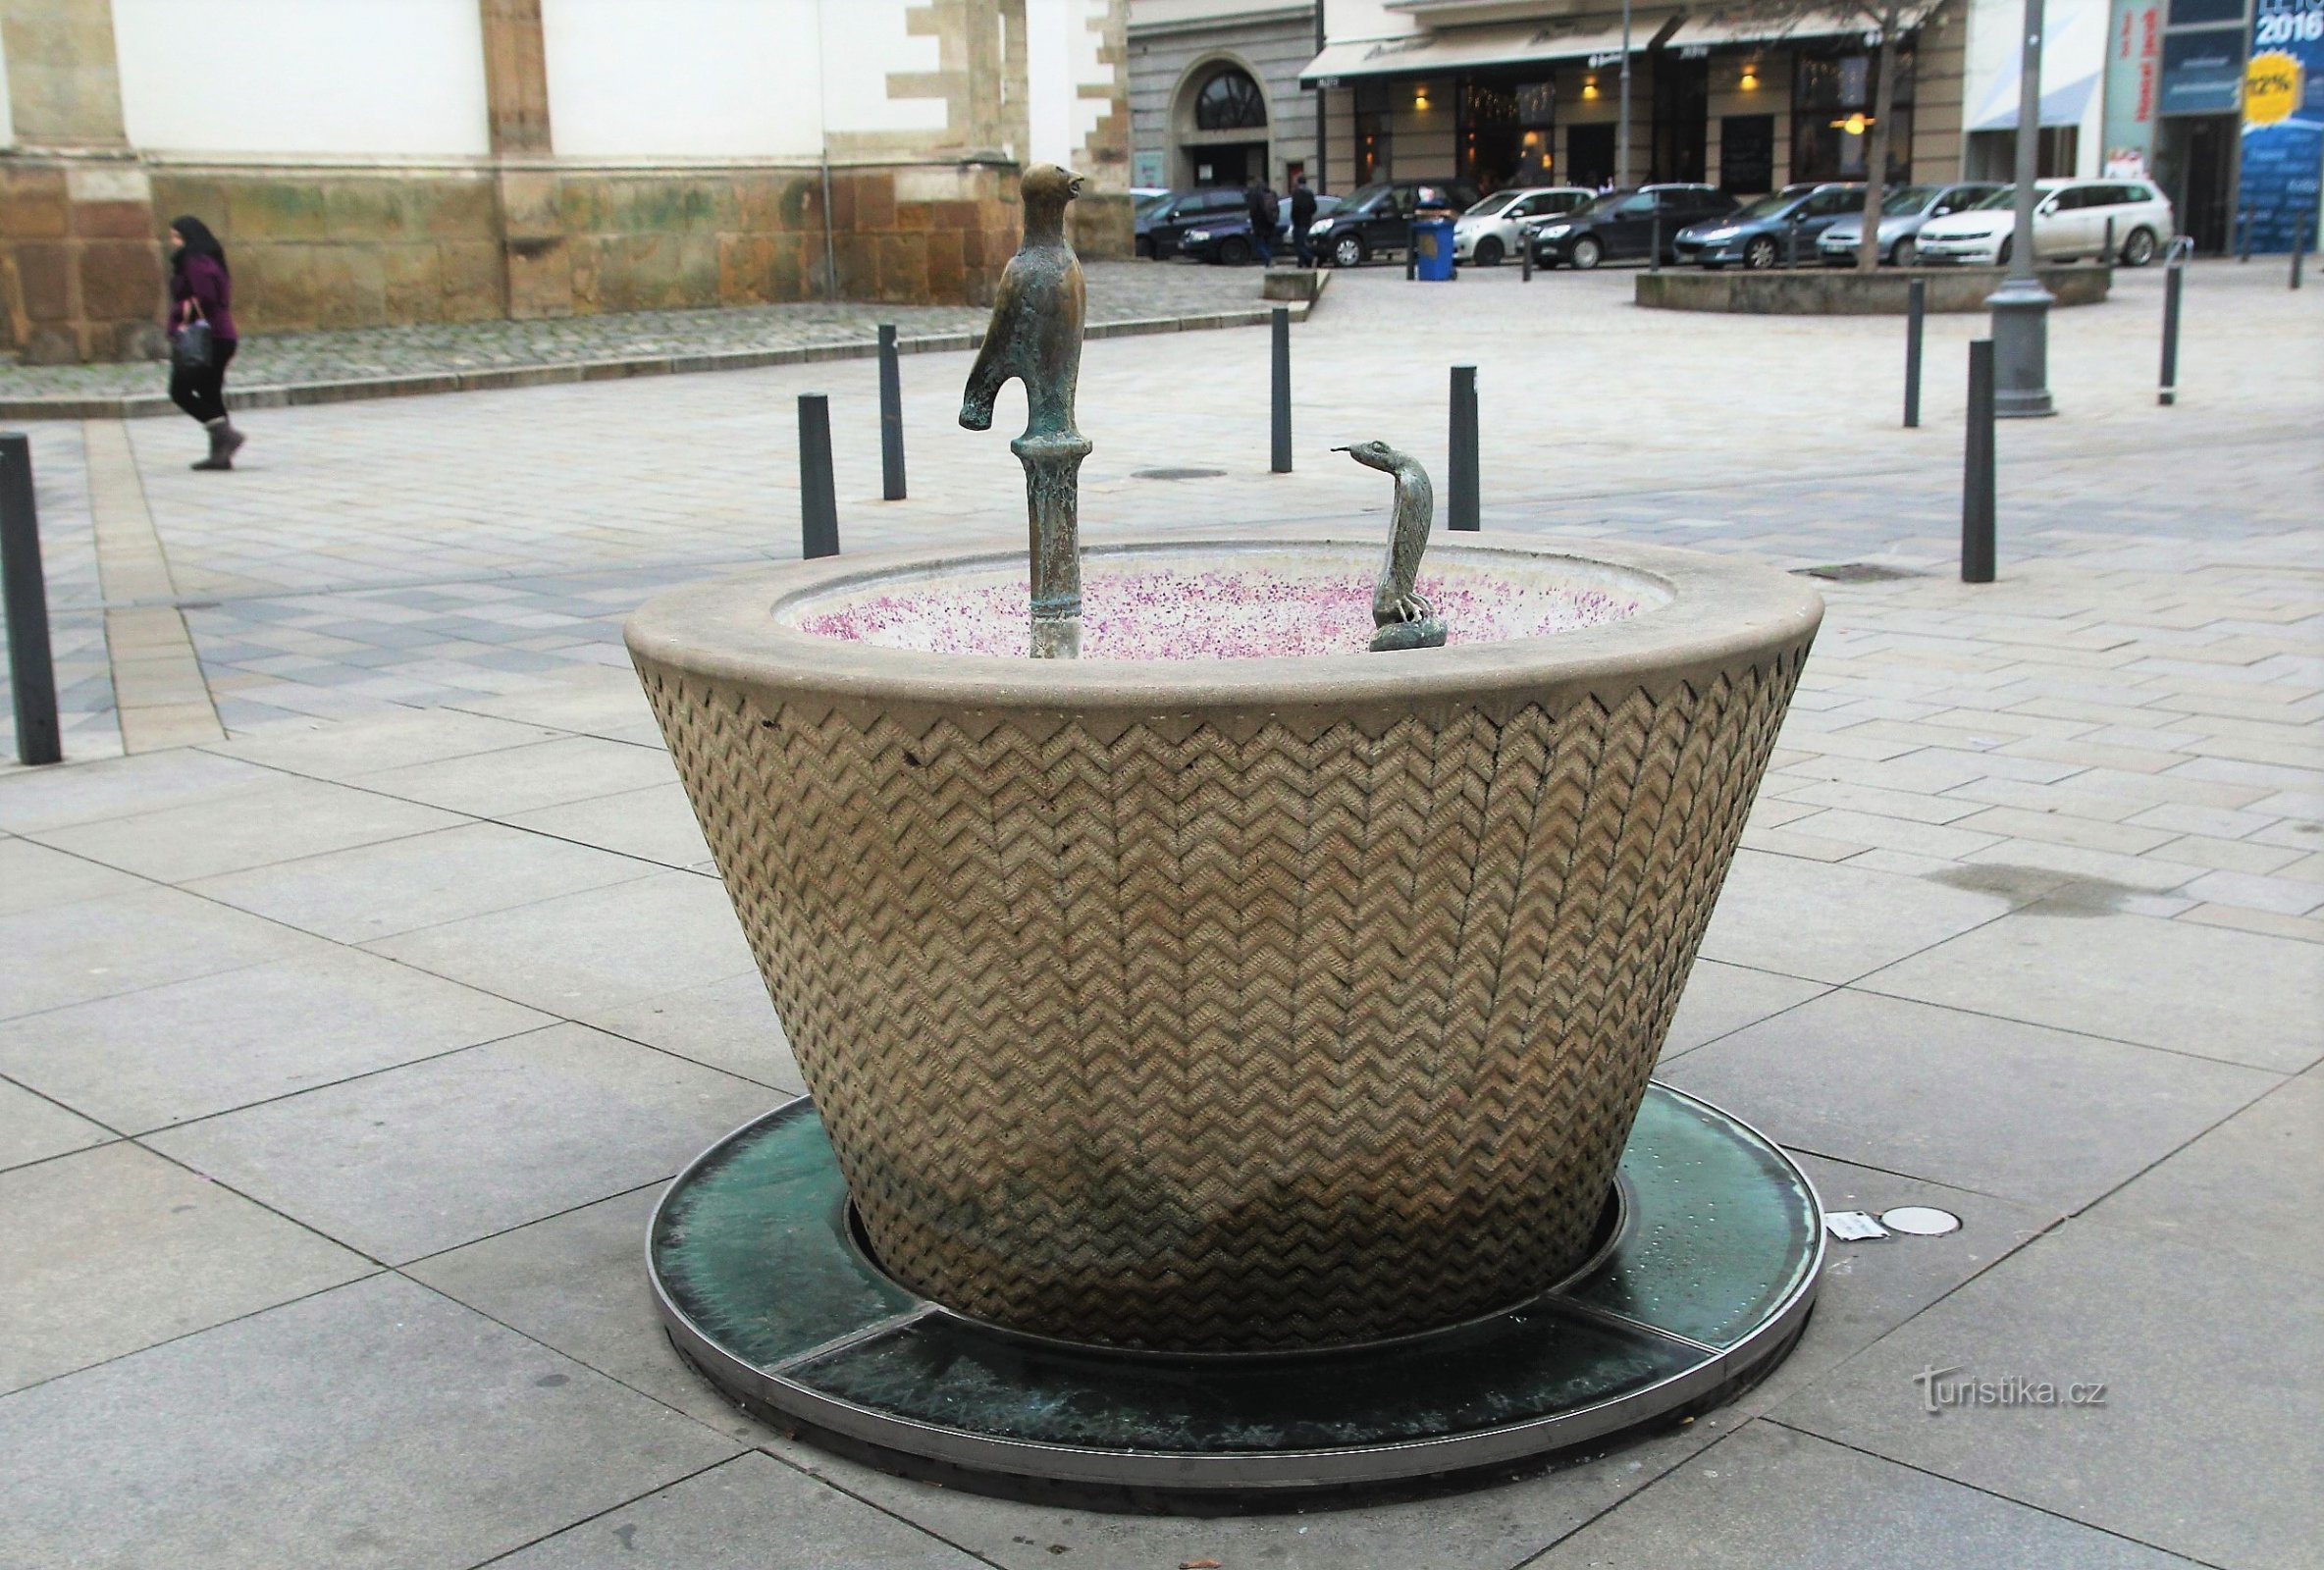 Brno - fountain on Jakubské náměstí